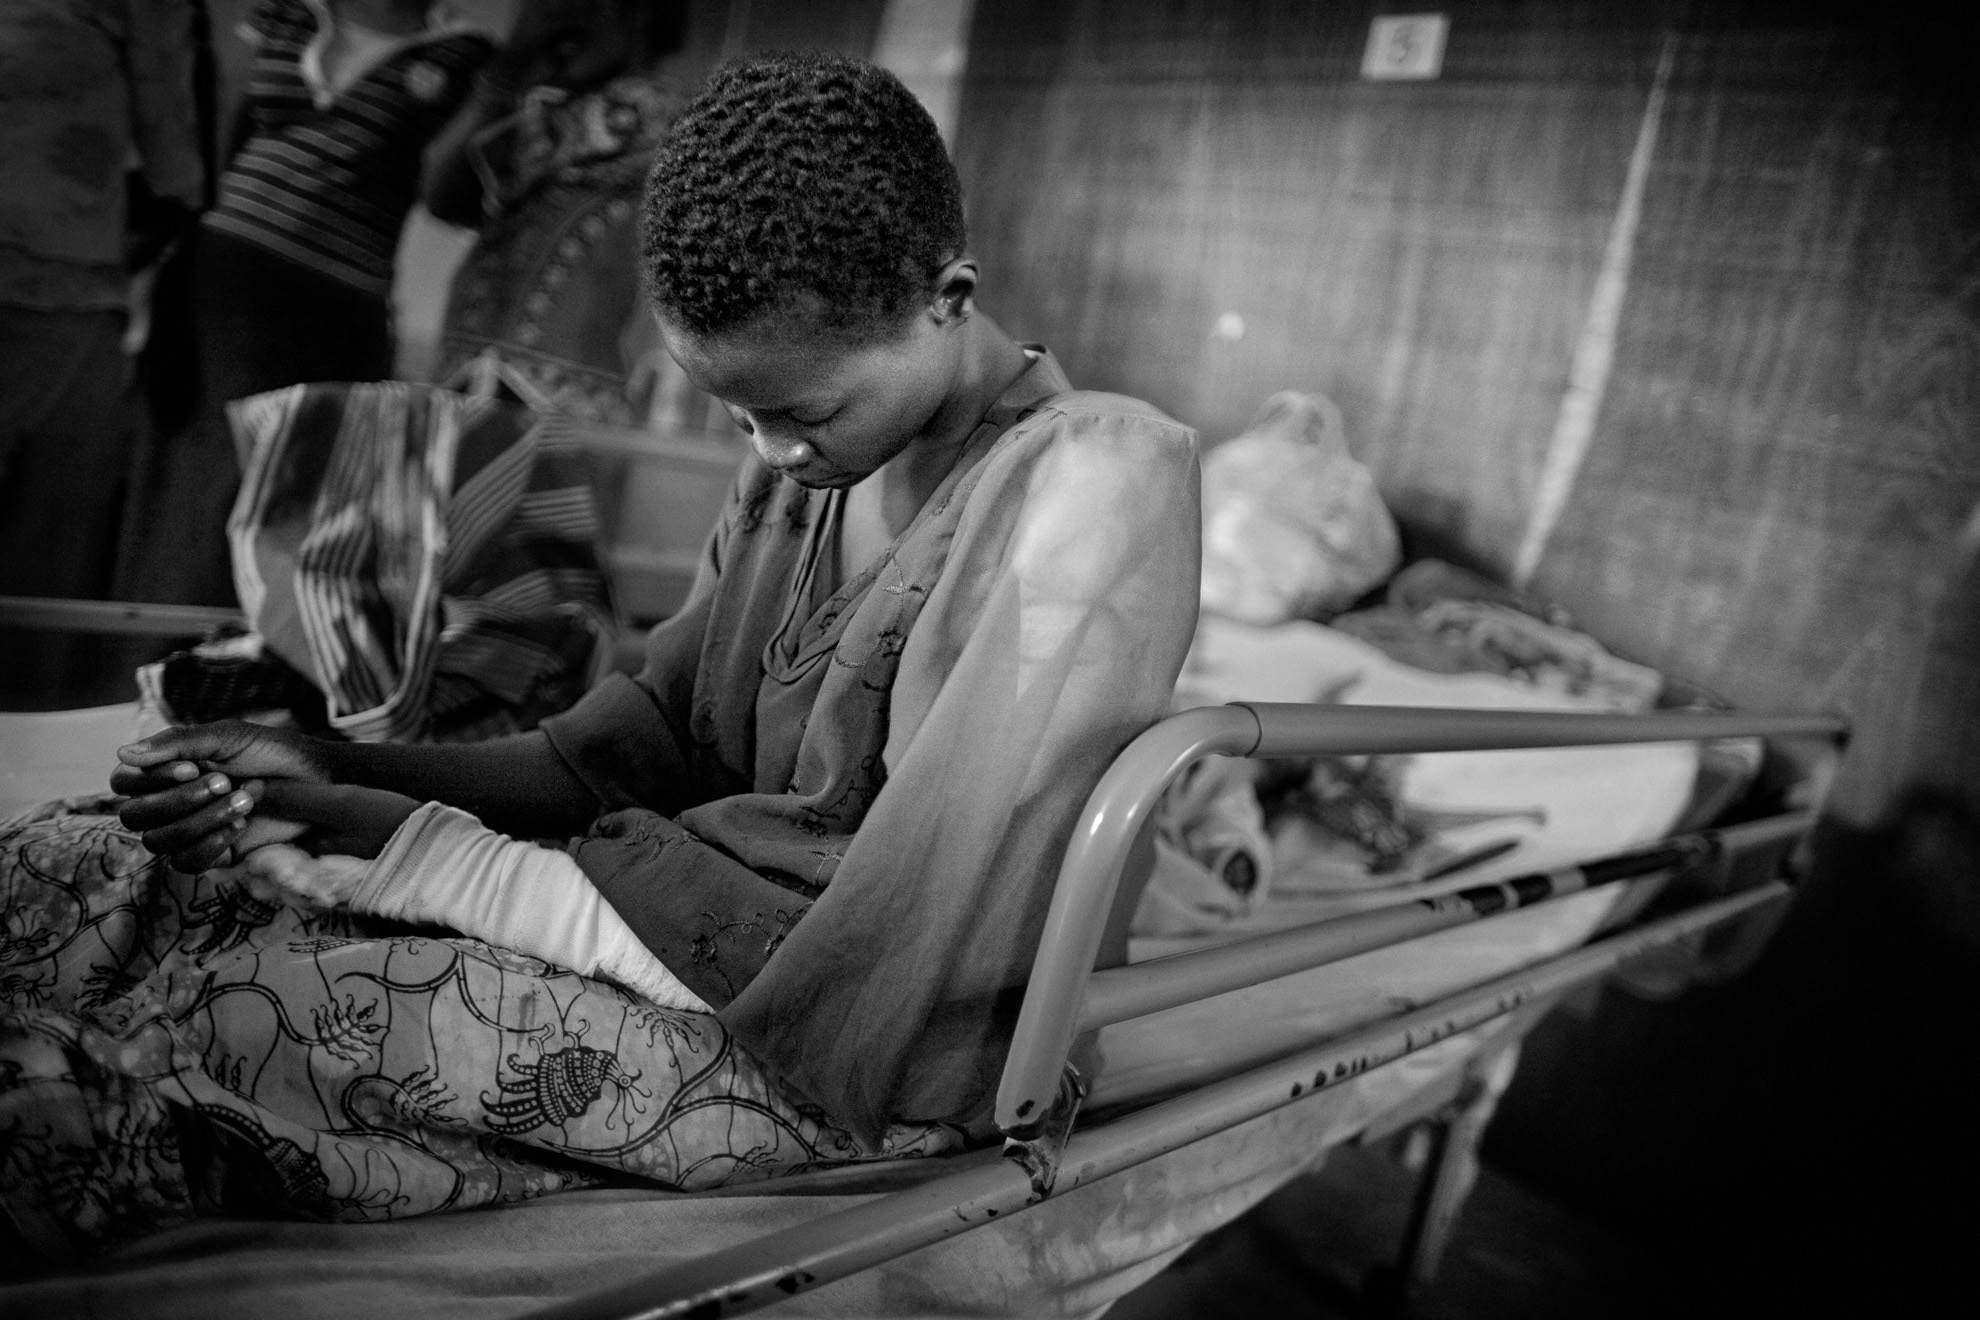 Zawa Antoinette, de 18 años, en el hospital Heal Africa en Goma. “Intenté escapar de los enfrentamientos en mi pueblo, pero quedé atrapada en el fuego cruzado. Me dispararon en el brazo”. Zawa tuvo que andar desde su pueblo hasta el hospital con su único hijo en brazos. El campo estaba abarrotado y las personas recién llegadas vivían en hangares de plástico y dormían en suelo sucio. Otras muchas se refugiaron en iglesias, escuelas y domicilios privados cerca de Goma. En el centro de recepción pude hablar con Kaboyeneye Sibomana, de 28 años. Llevaba dos días allí, a la espera de un lugar donde poder vivir, con sus hijos en el regazo. “Anduvimos durante tres días antes de llegar al campamento. En mi ciudad todo el mundo huyó: unas 5.000 personas. Ahora tenemos que ser pacientes y esperar que la guerra termine pronto”.